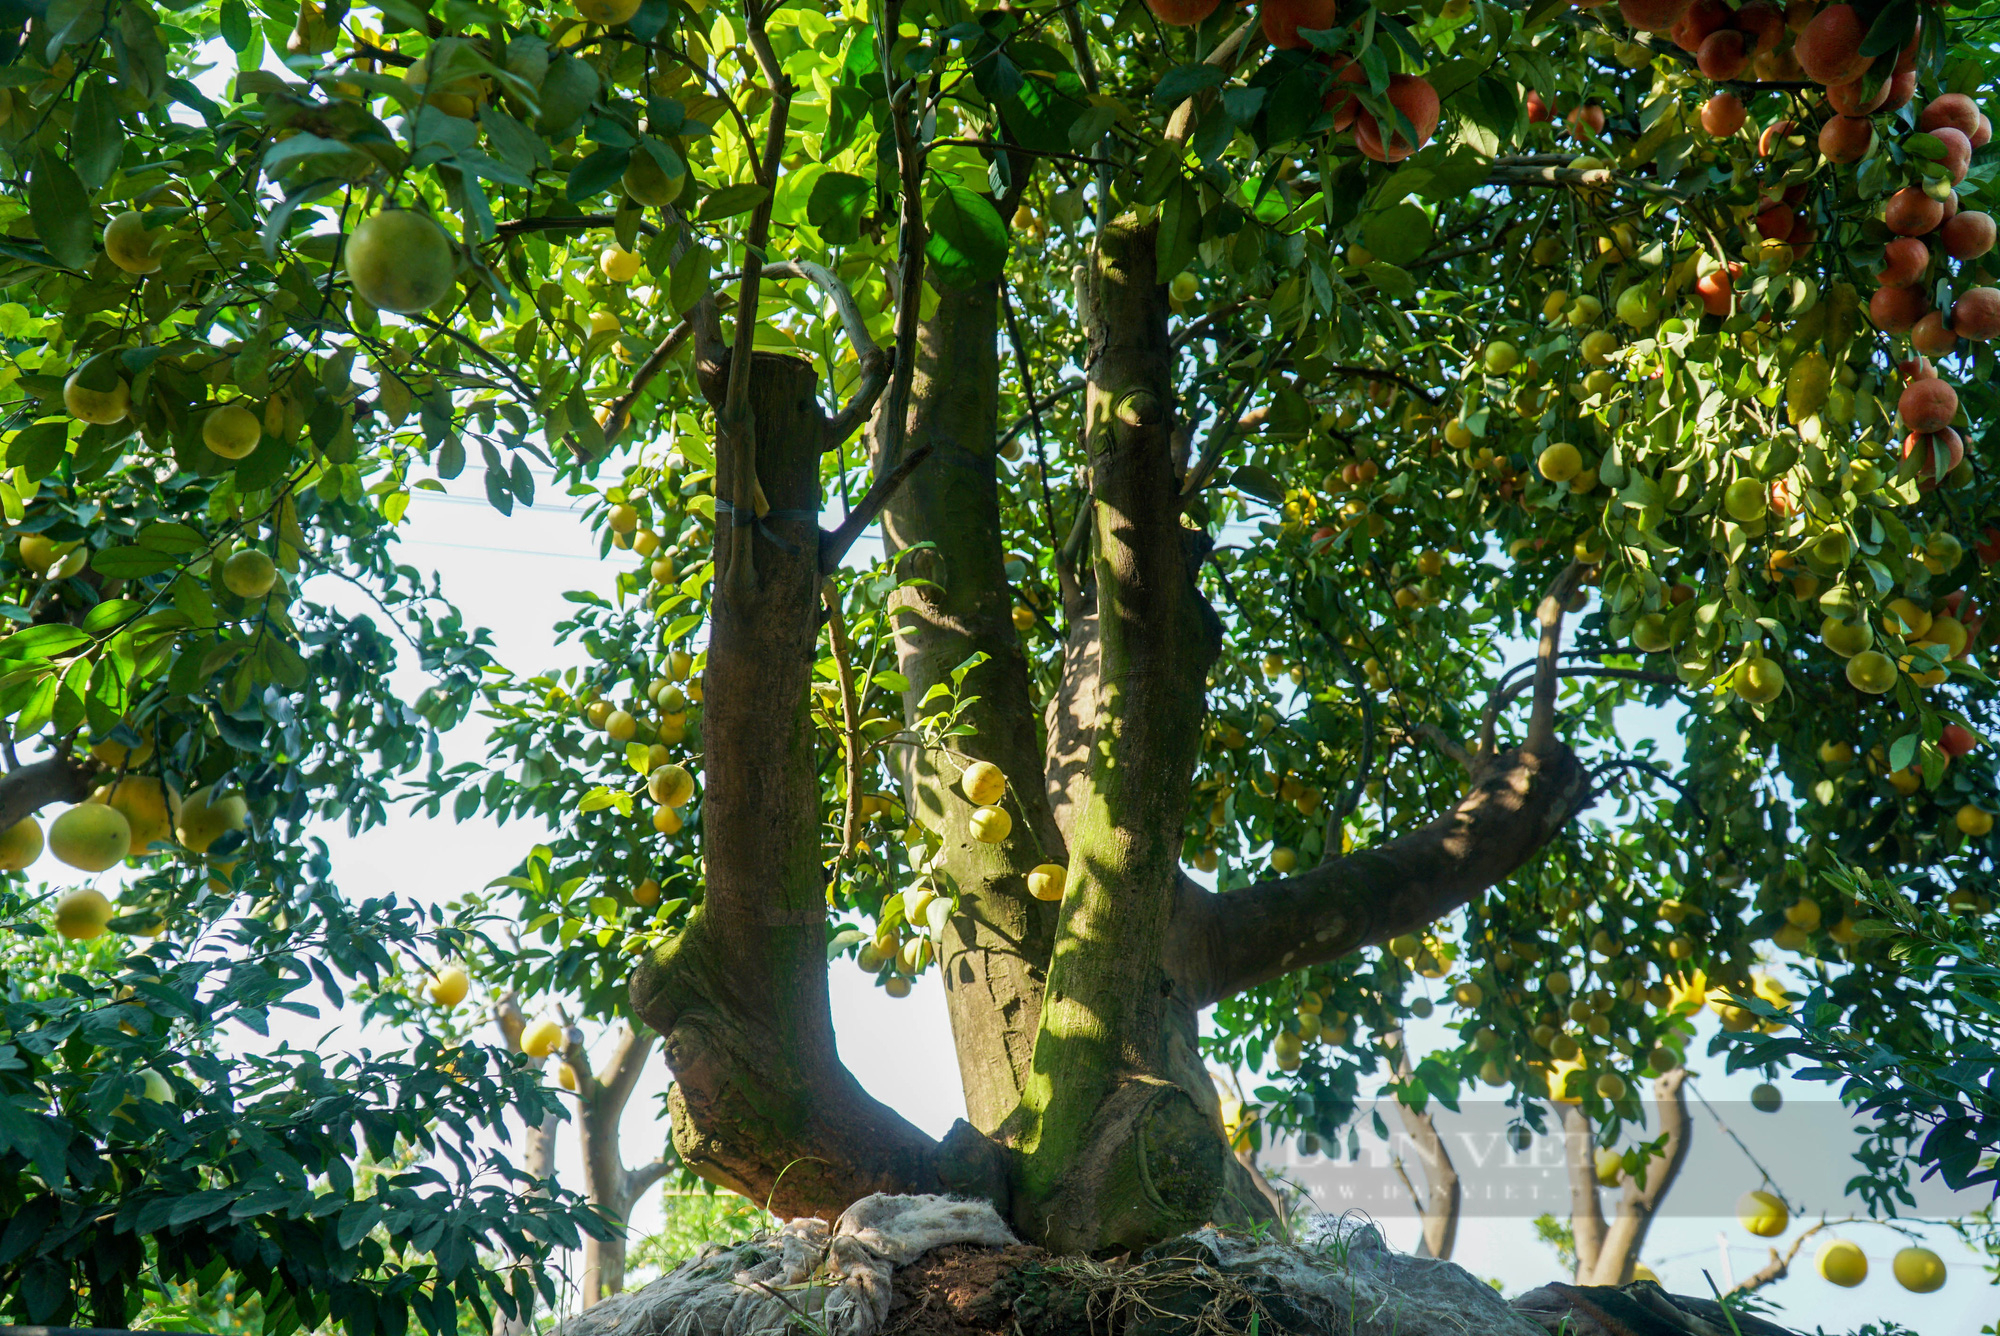 Ngắm nhìn vườn chanh bonsai tiền tỷ của lão nông Hưng Yên - Ảnh 4.